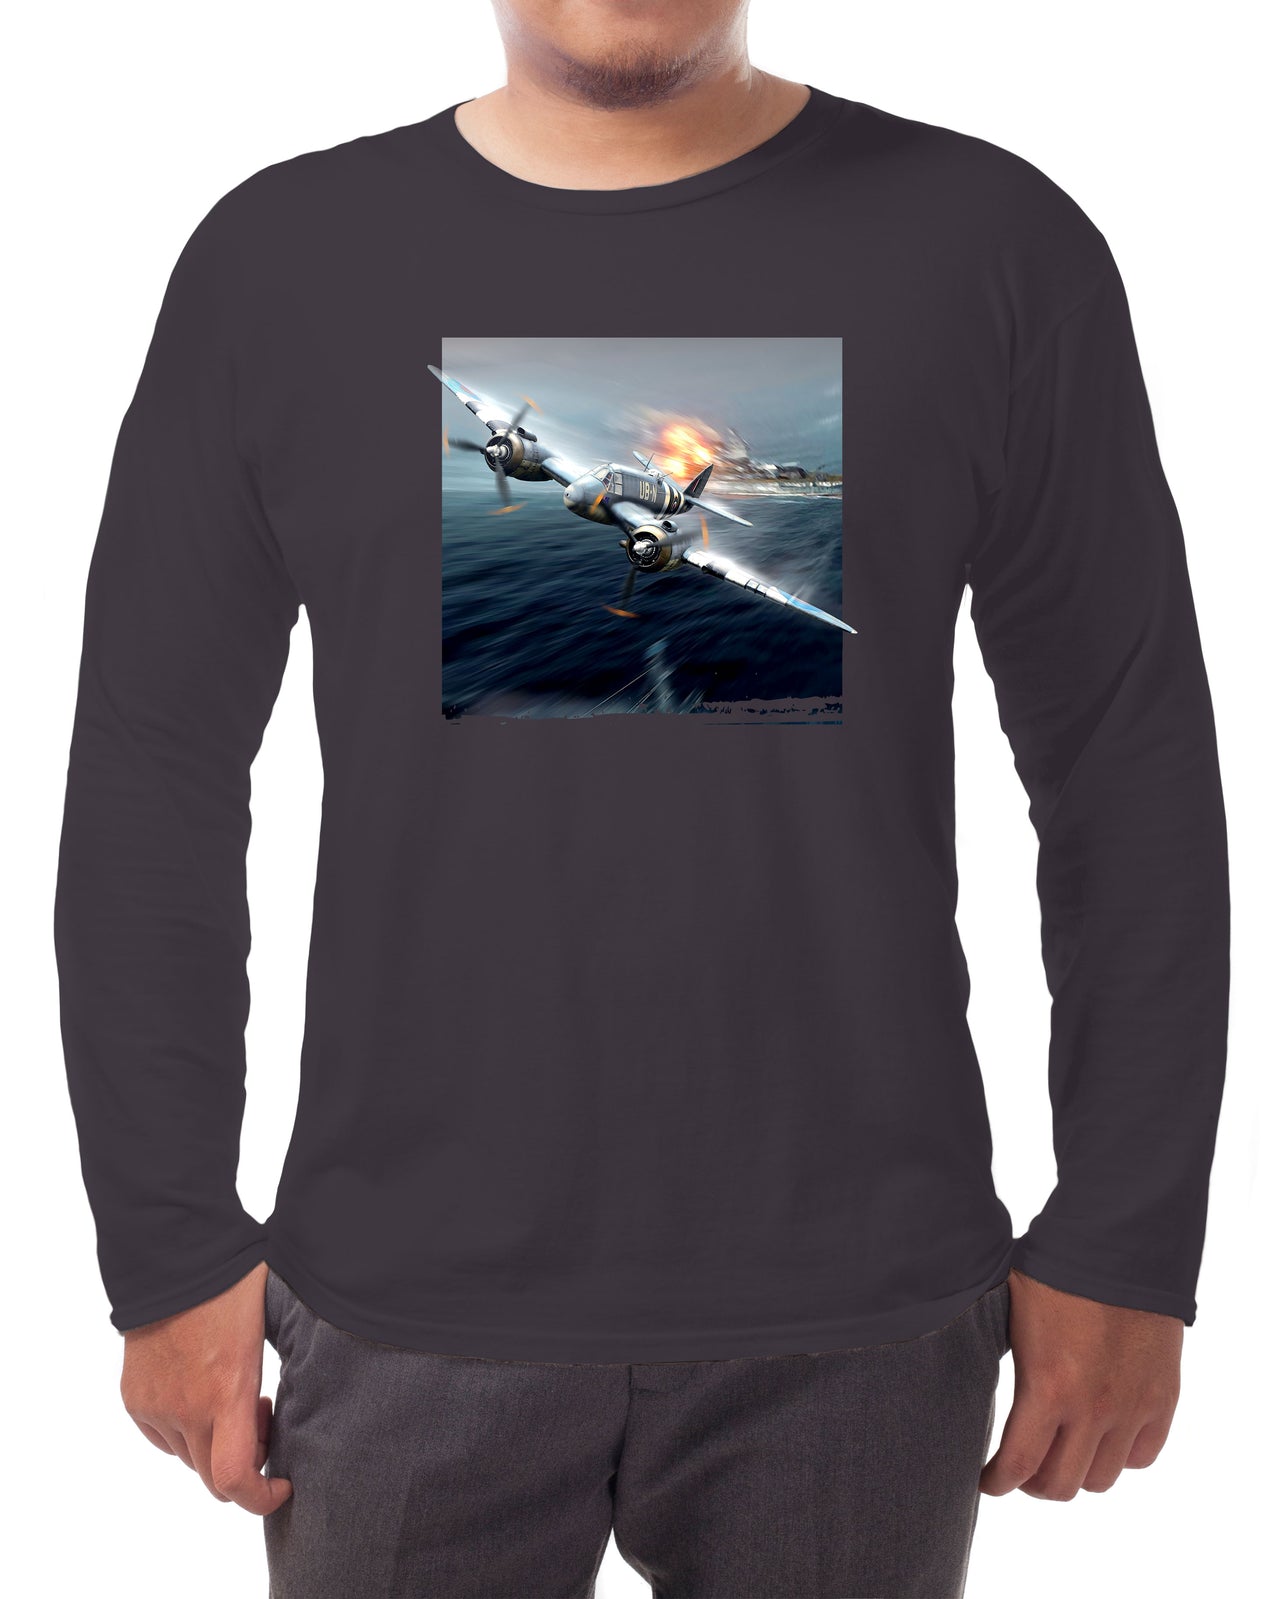 Bristol Beaufighter - Long-sleeve T-shirt